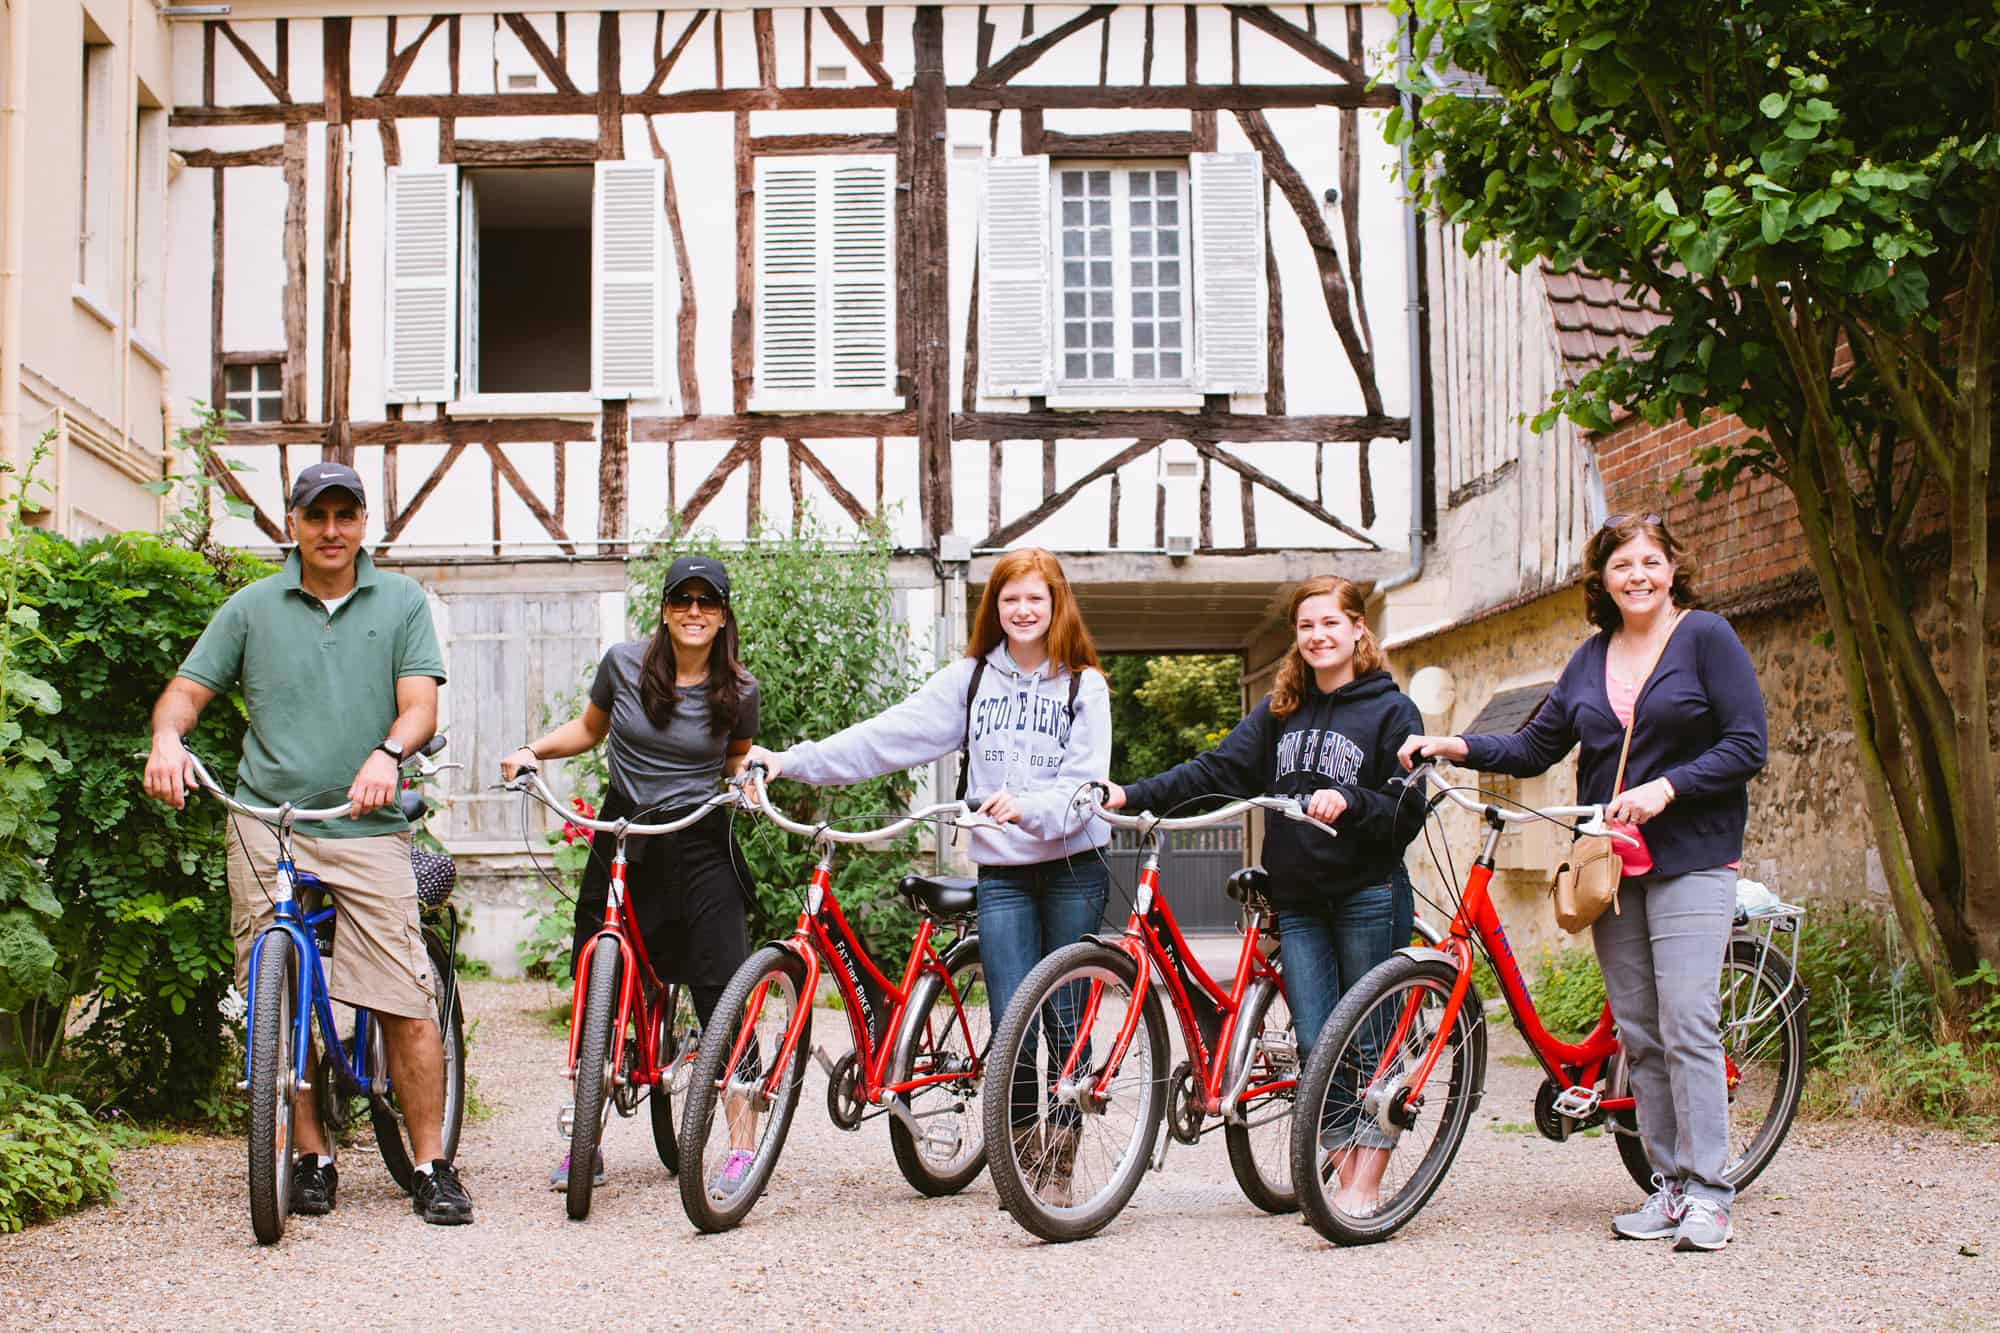 Paris, Monet_S Gardens Bike Tour, Hero Sliders, Paris-Monet-S-Gardens-Bike-Tour-Hero-Slider-6-Large.